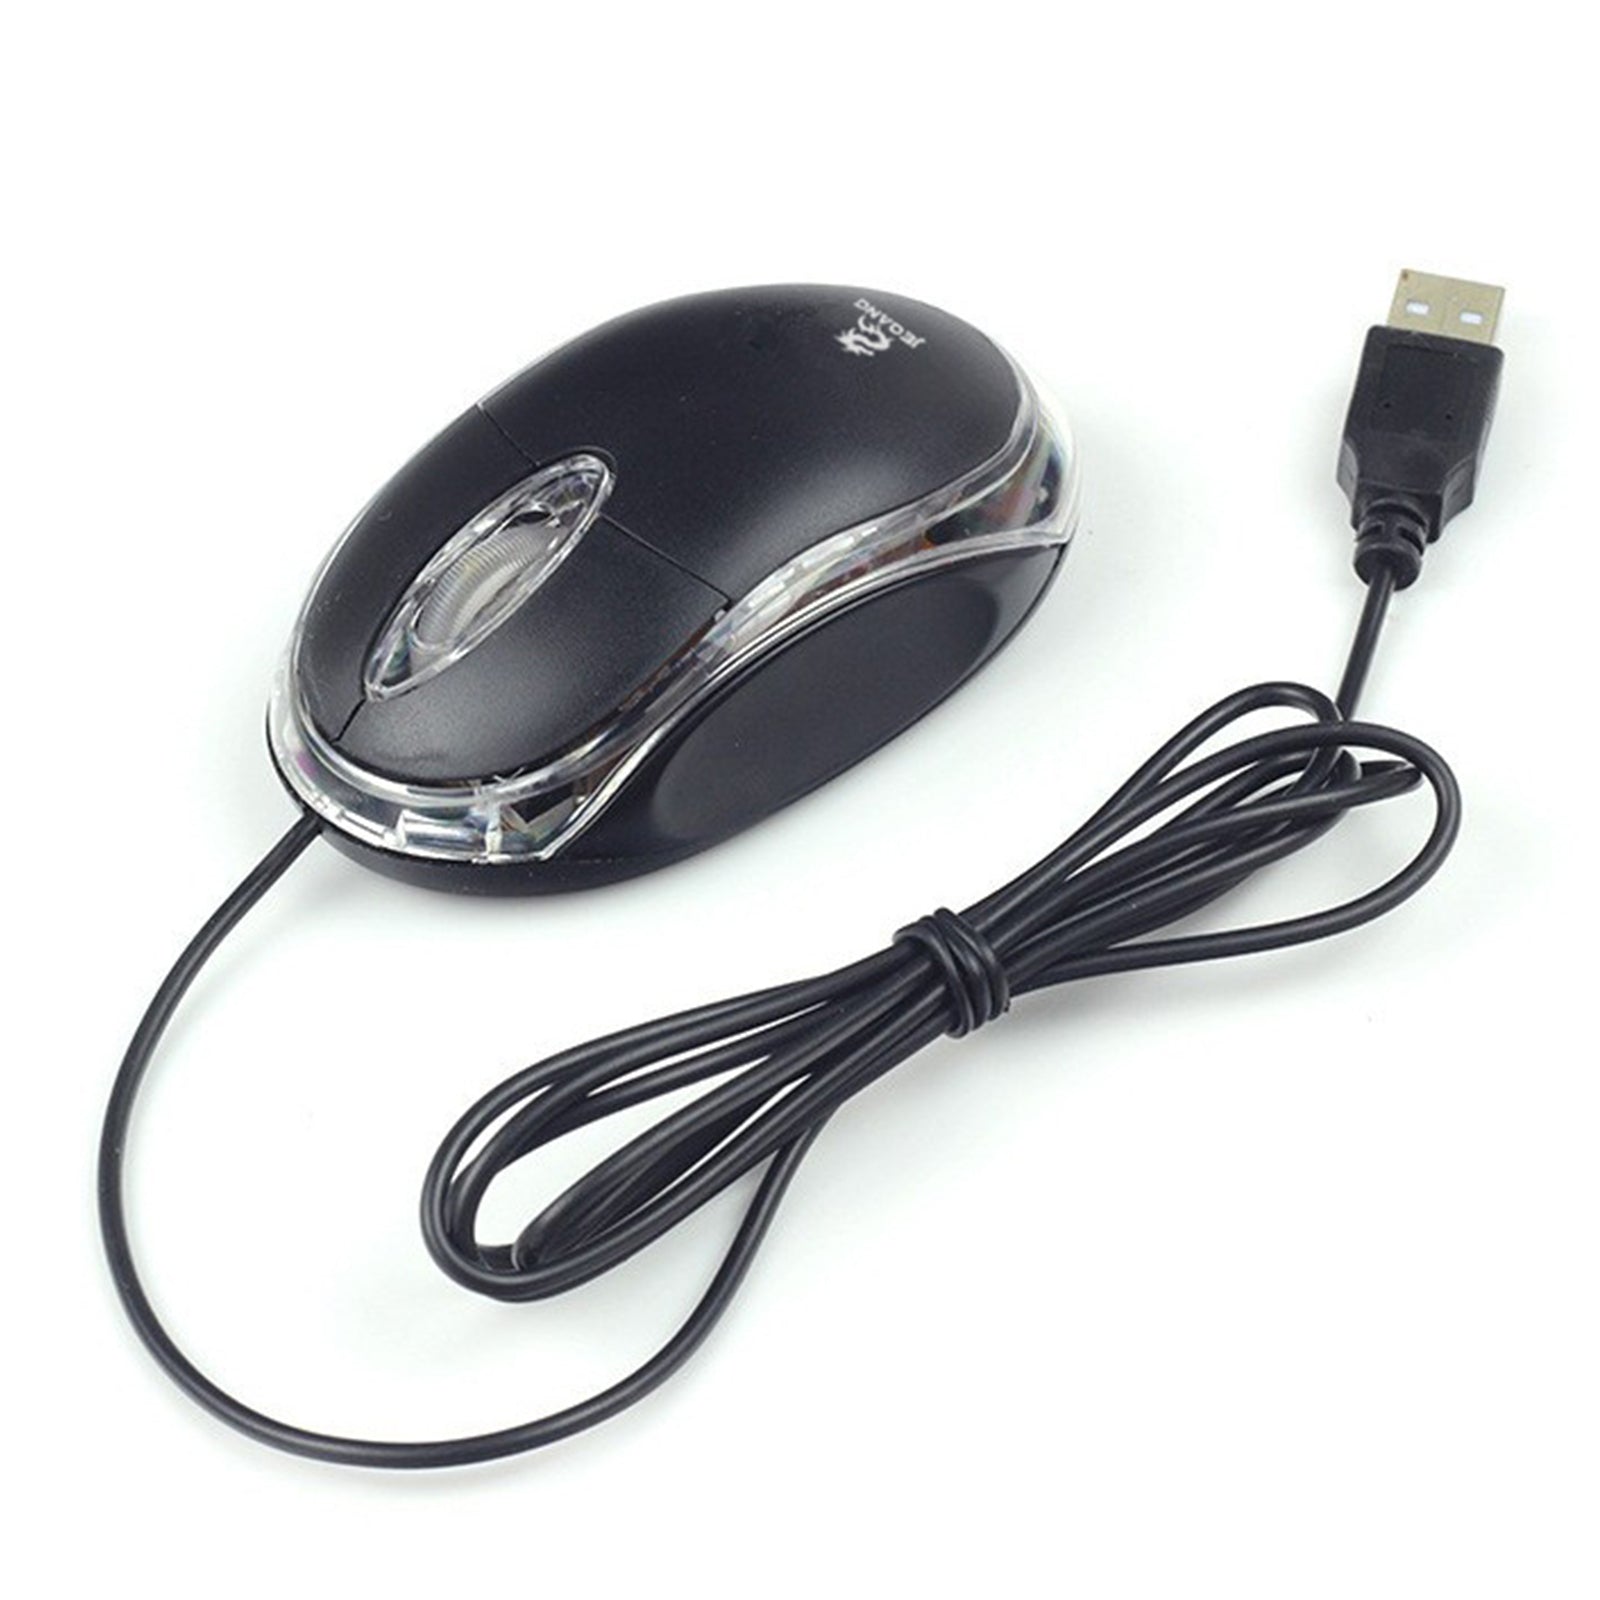 TD® Souris USB Optique rouleau roue 3D Filaire / Souris pour Pc et